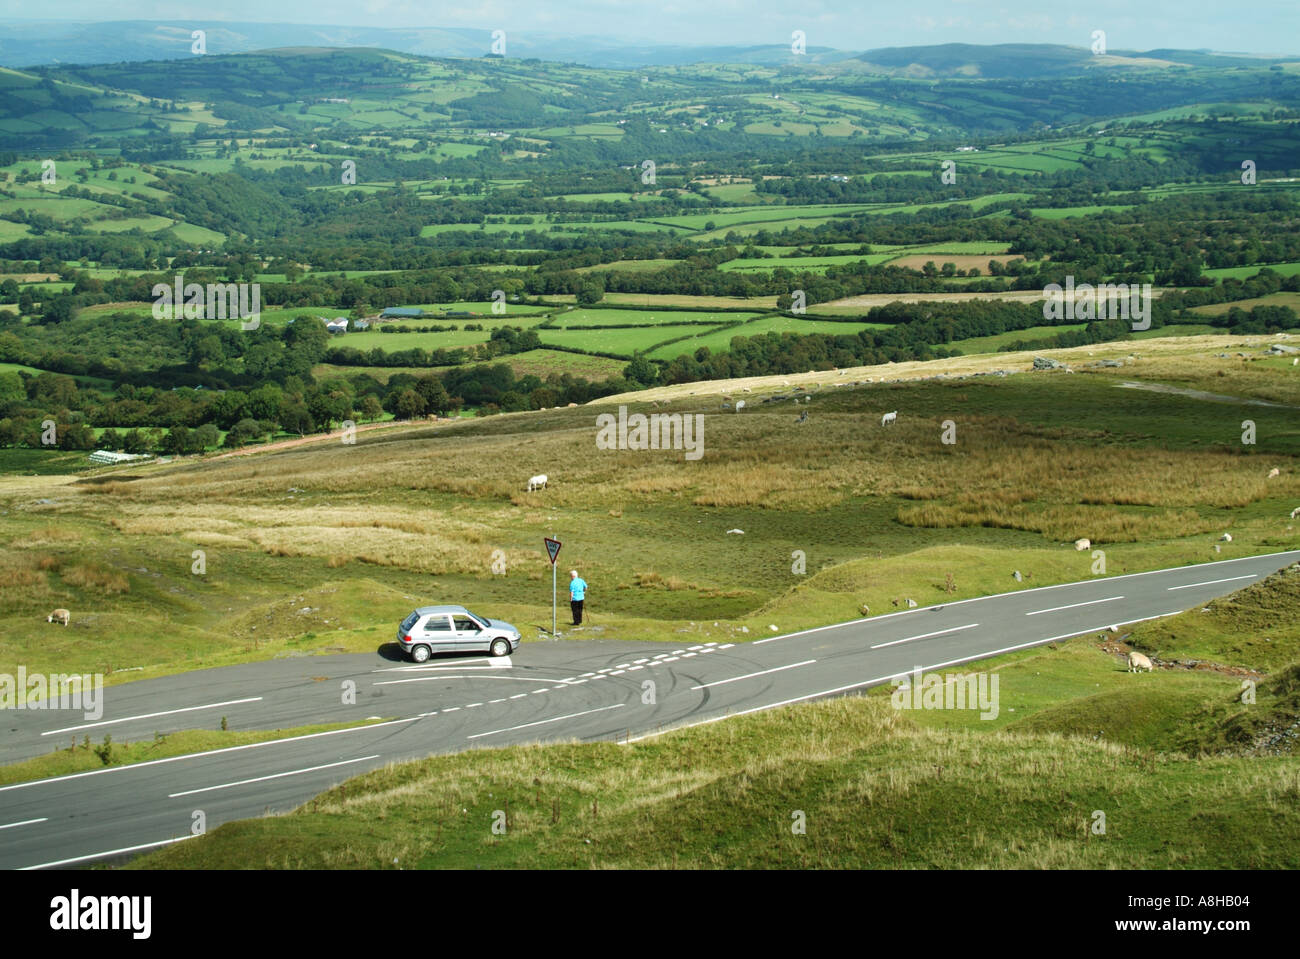 Le Parc National des Brecon Beacons non clôturé calme route avec voiture solitaire à la jonction de la lande de transition agriculture Carmarthenshire South Wales UK Banque D'Images